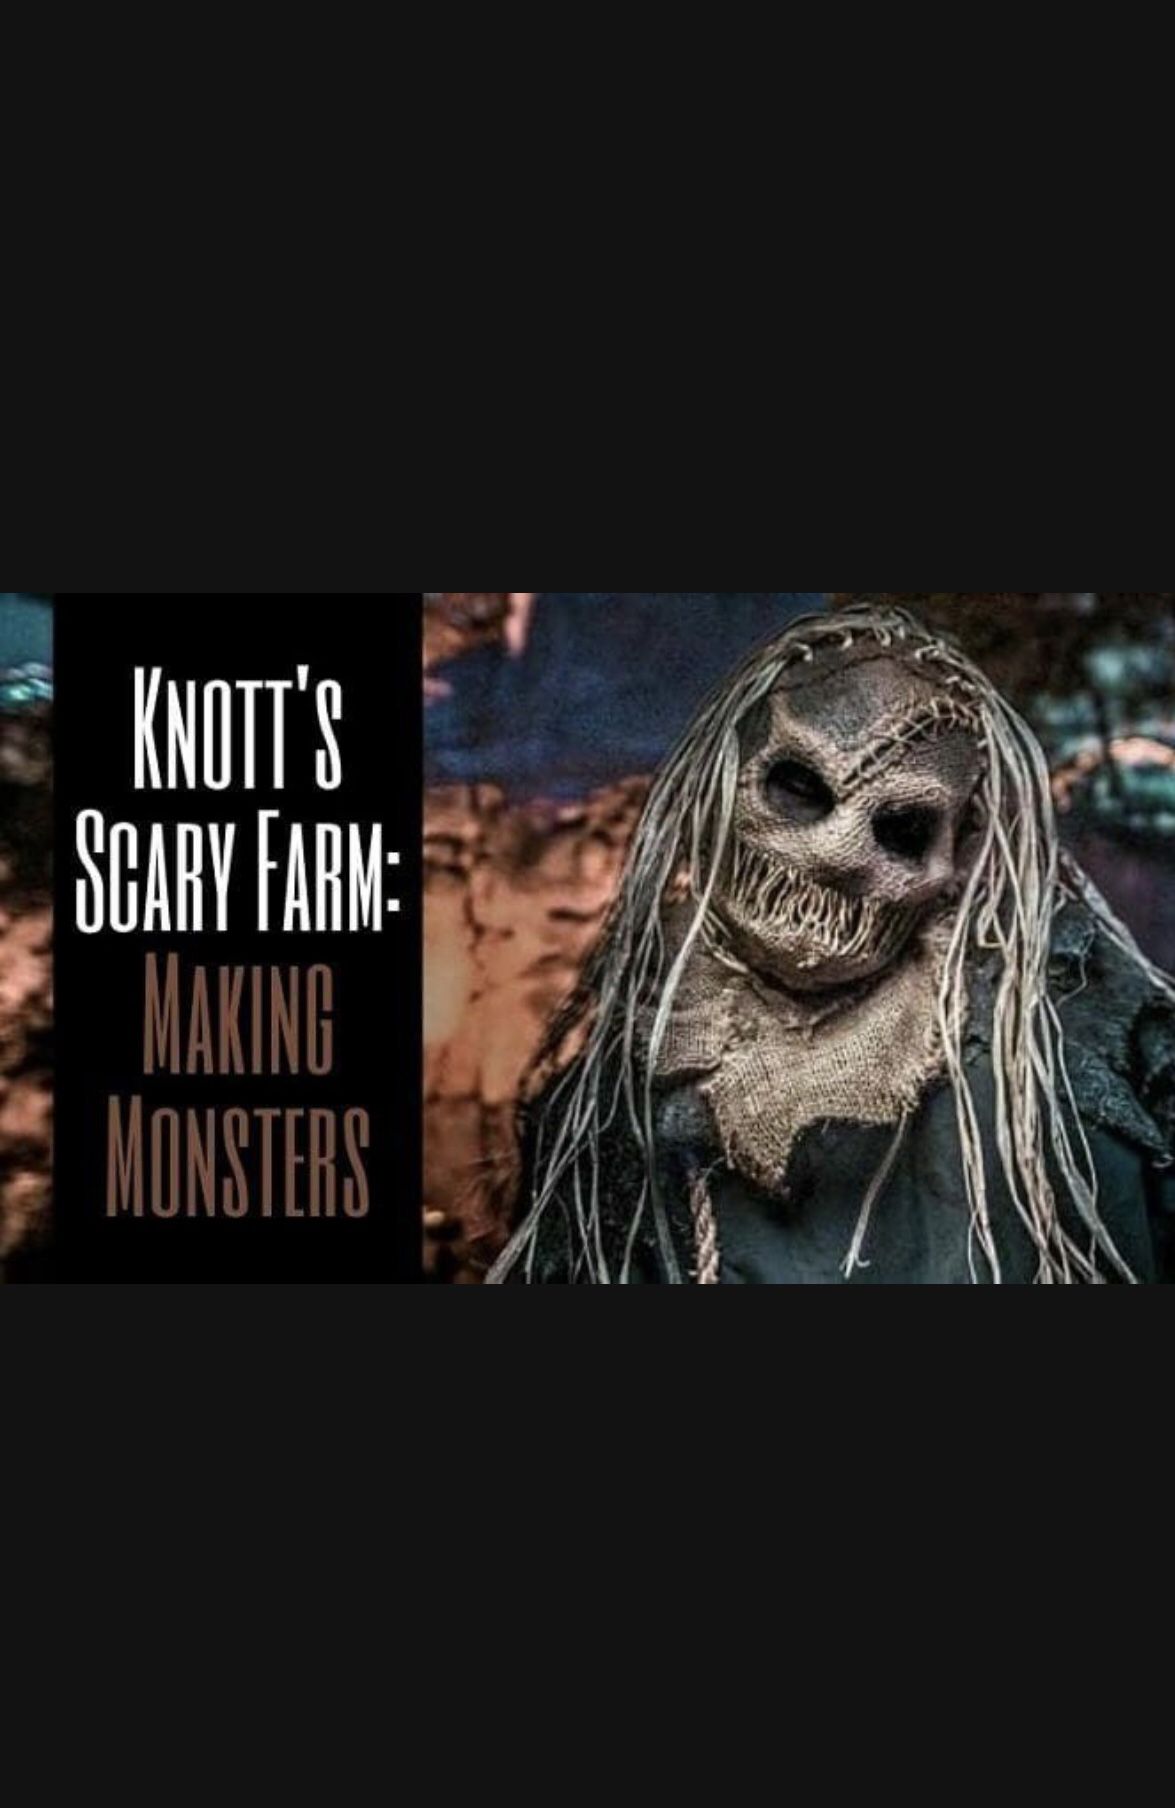 1 Knotts Scary Farm Ticket For Tonight